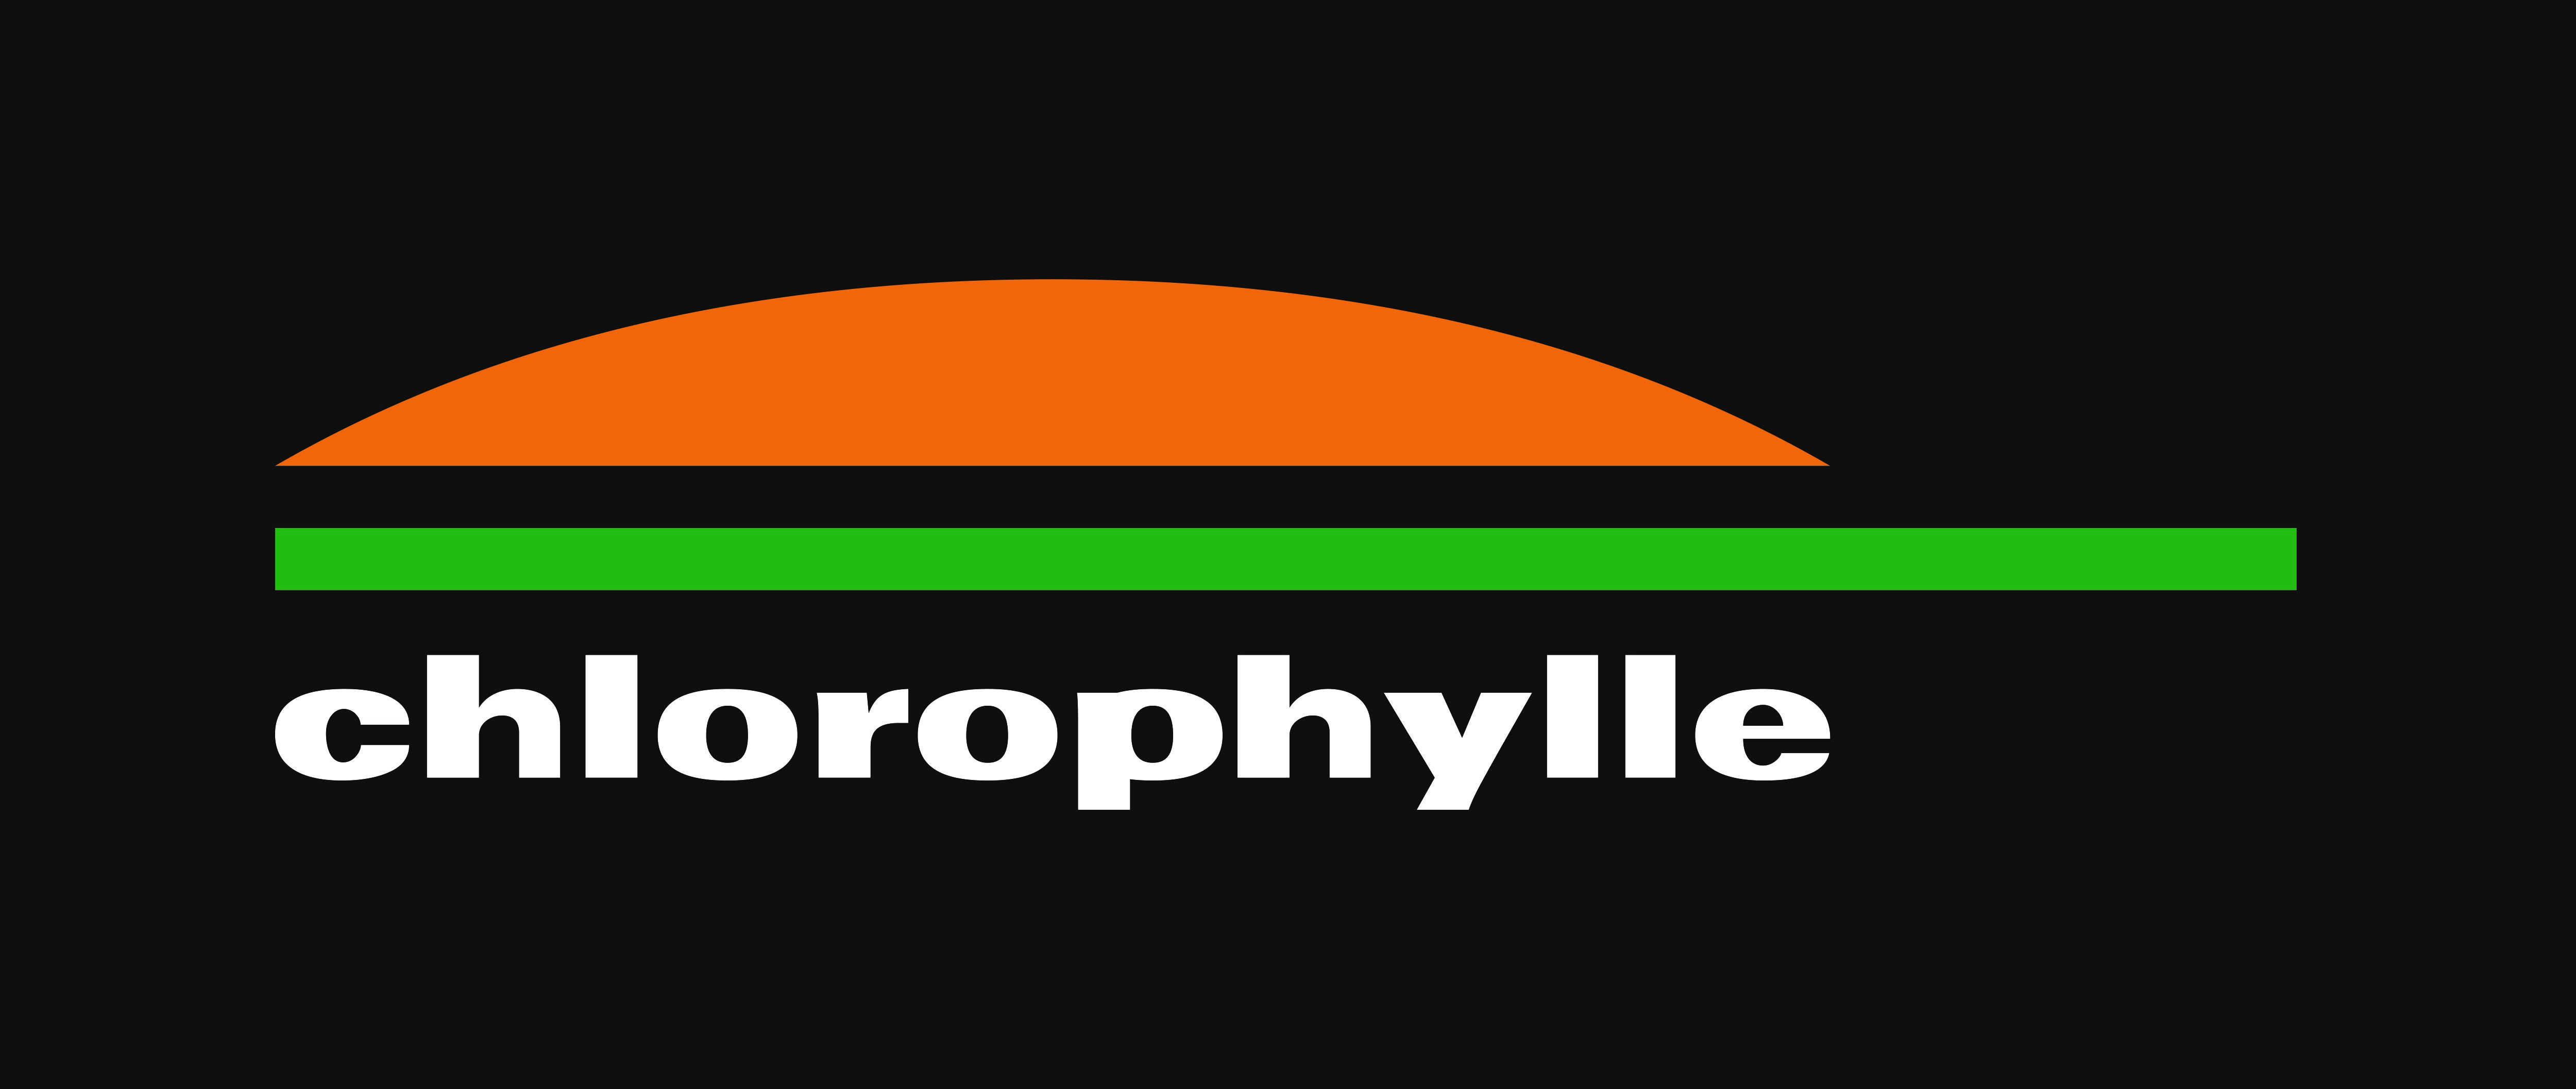 Chlorophylle est une entreprise canadienne qui développe et commercialise des produits haut de gamme spécialisés pour la pratique d’activités de plein air. Ses produits sont durables, performants et esthétiques.